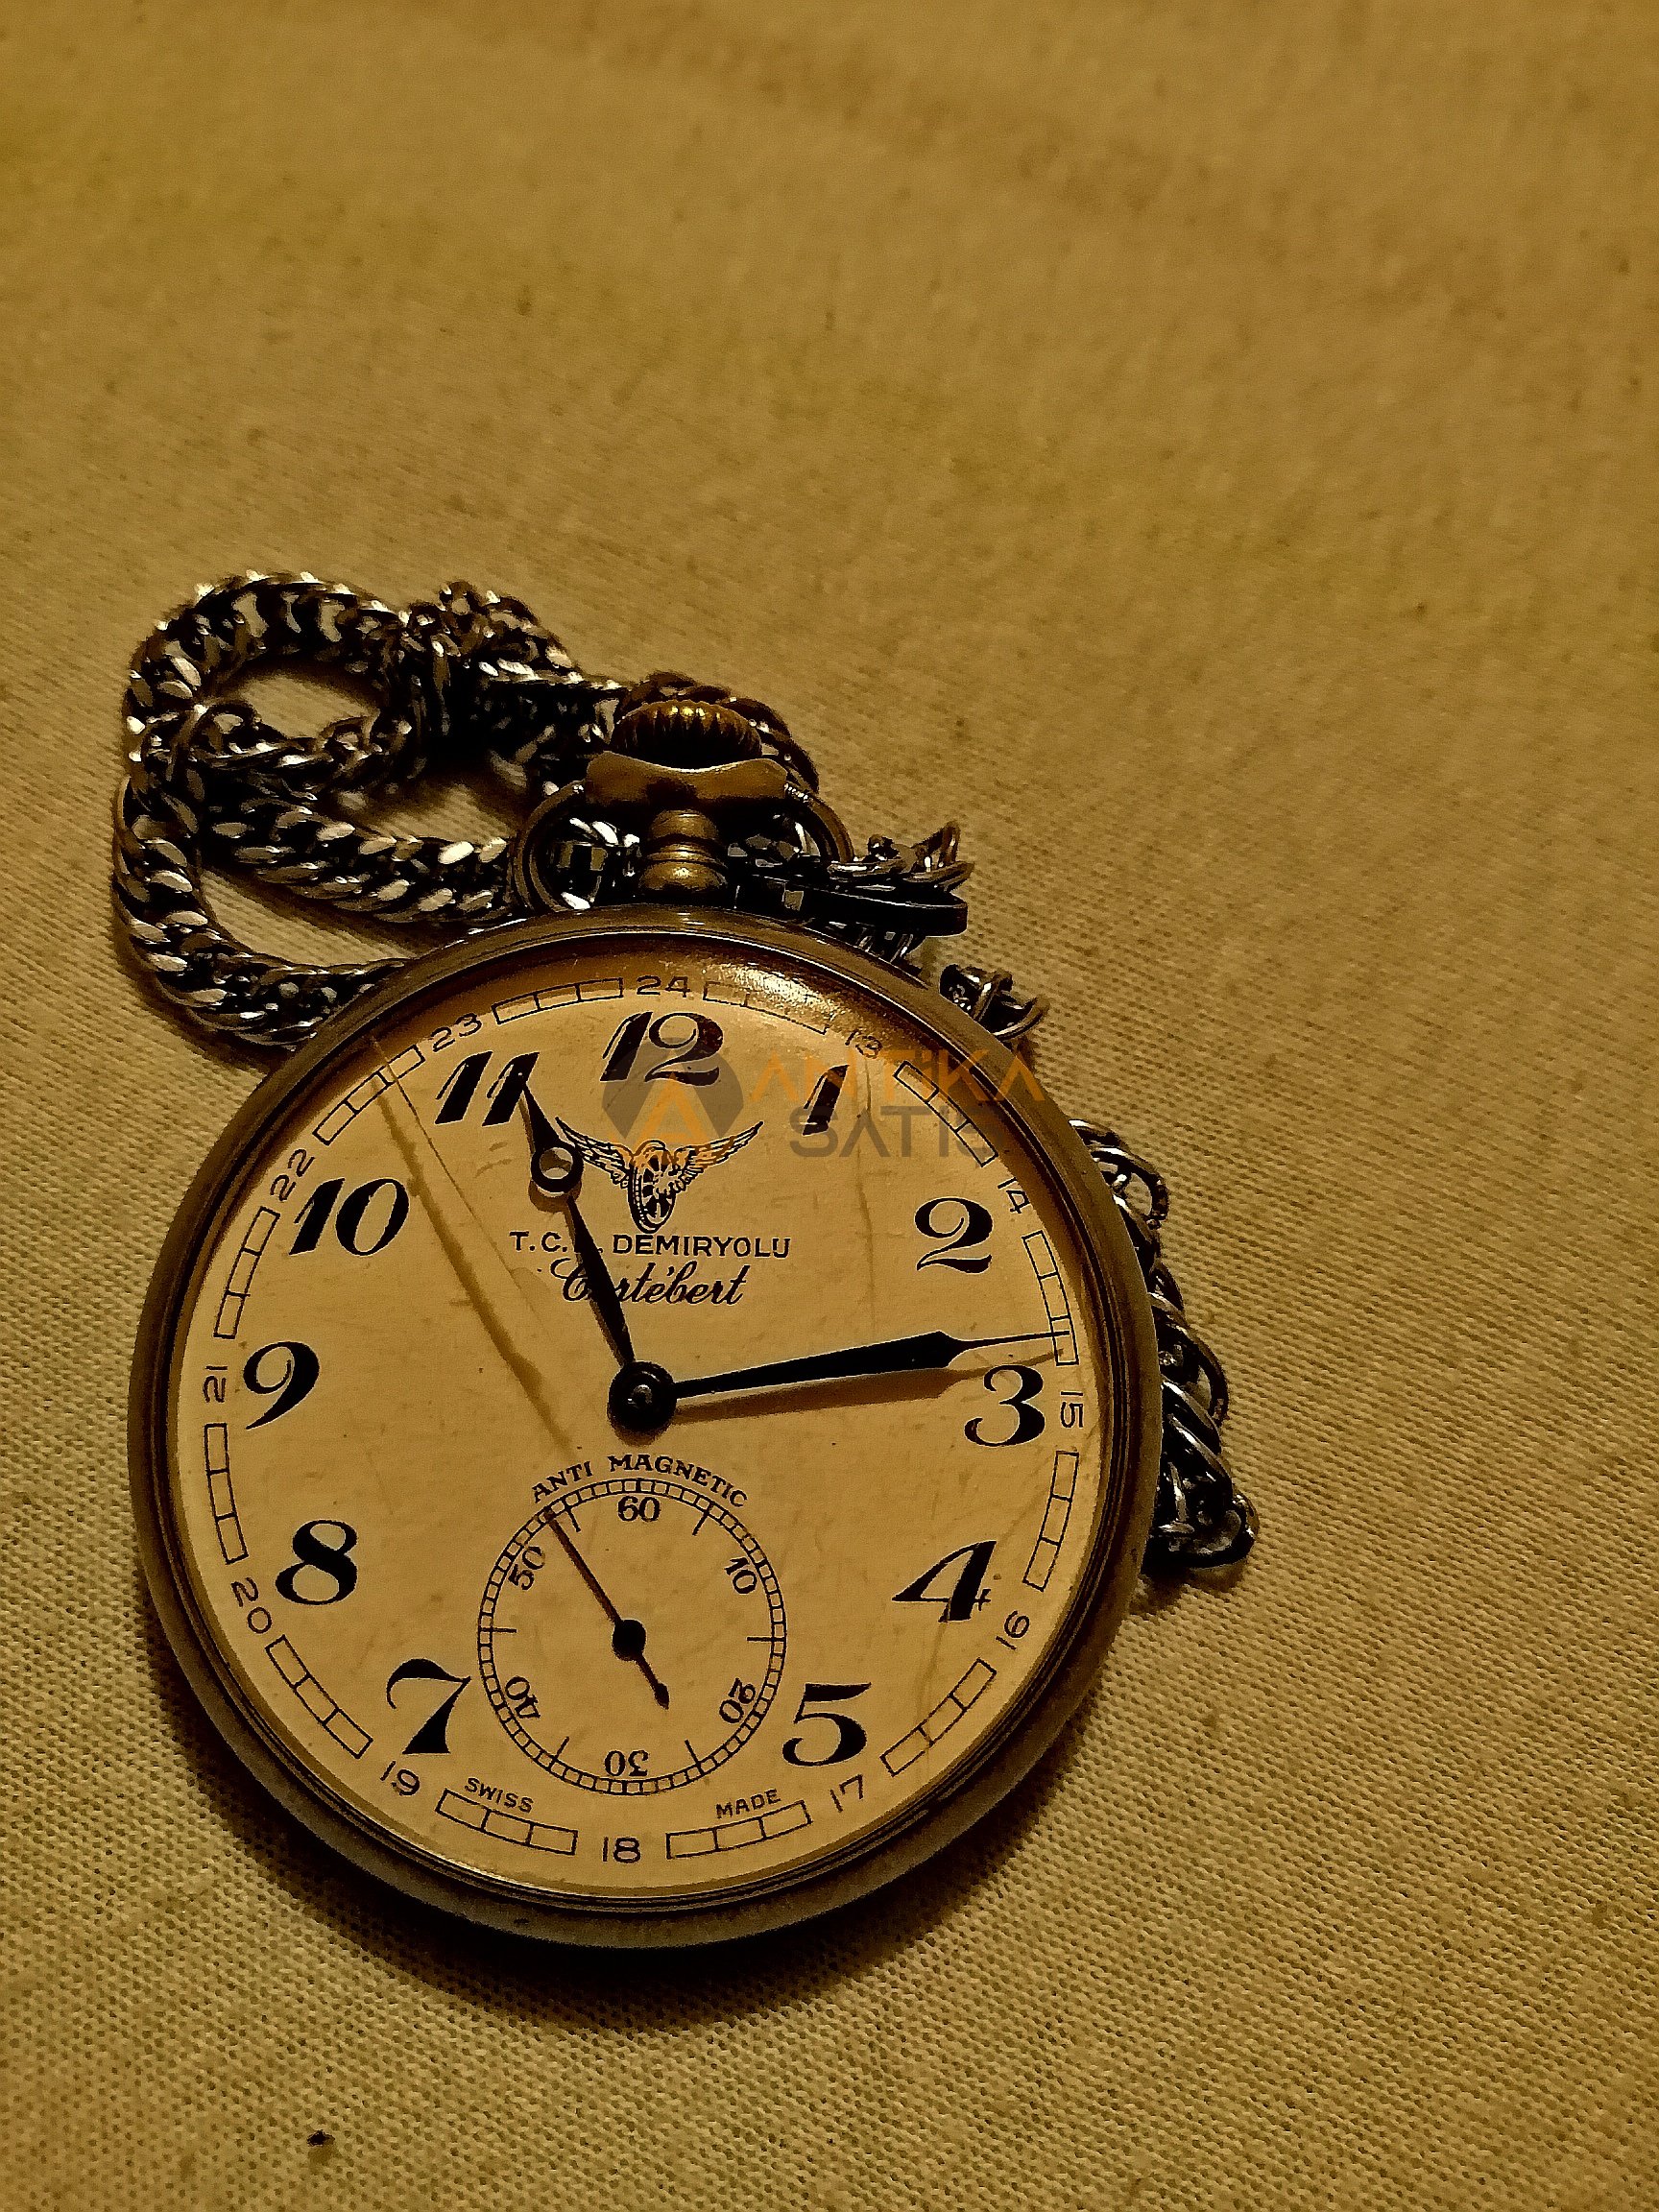 isviçre yapımı Cortebert marka 100 yıllık cep saati